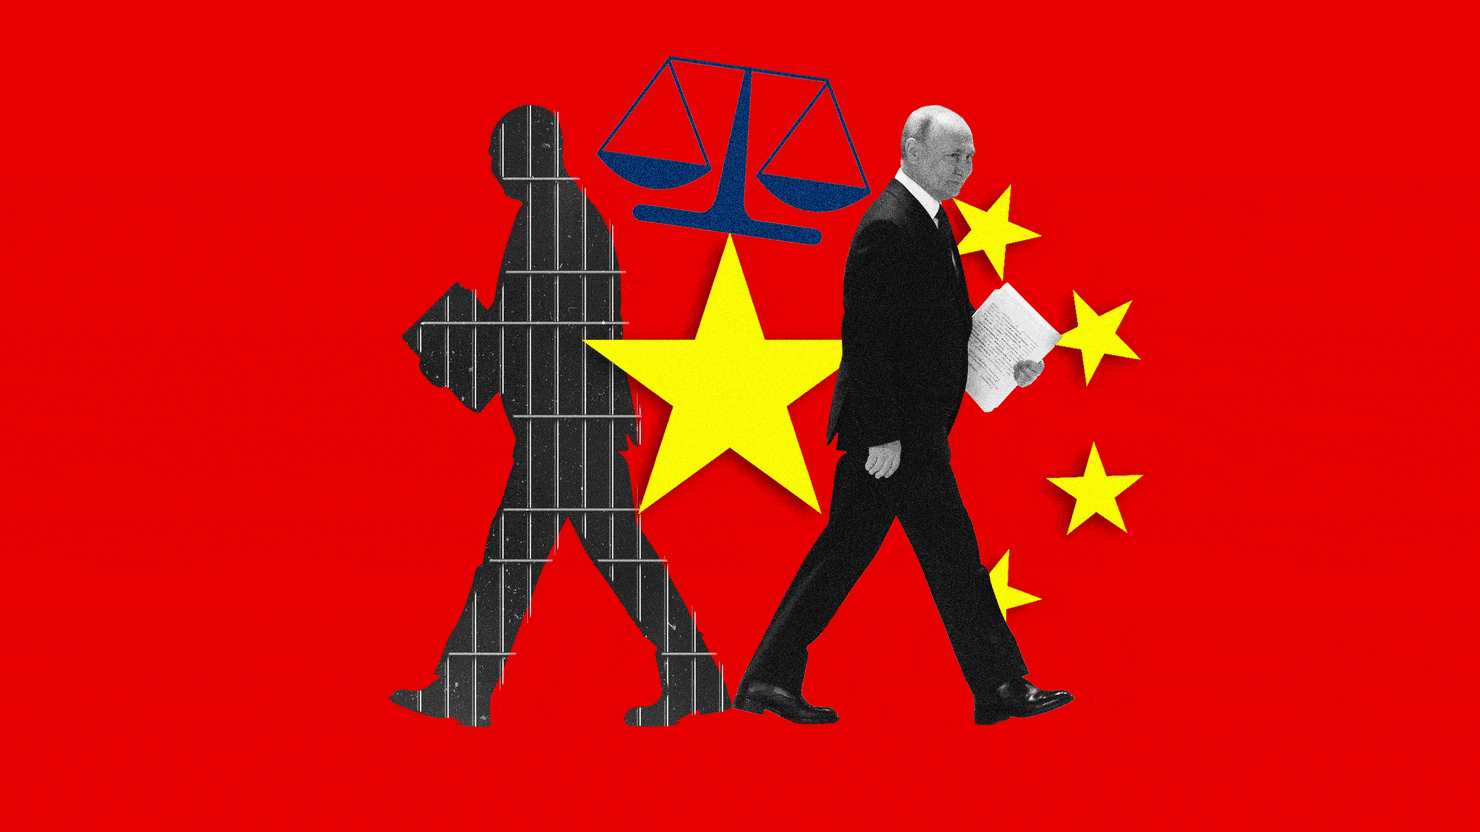 Dlaczego Putin udaje się do Chin w ramach swojej pierwszej dużej podróży zagranicznej po wydaniu nakazu aresztowania przez Międzynarodowy Trybunał Karny?